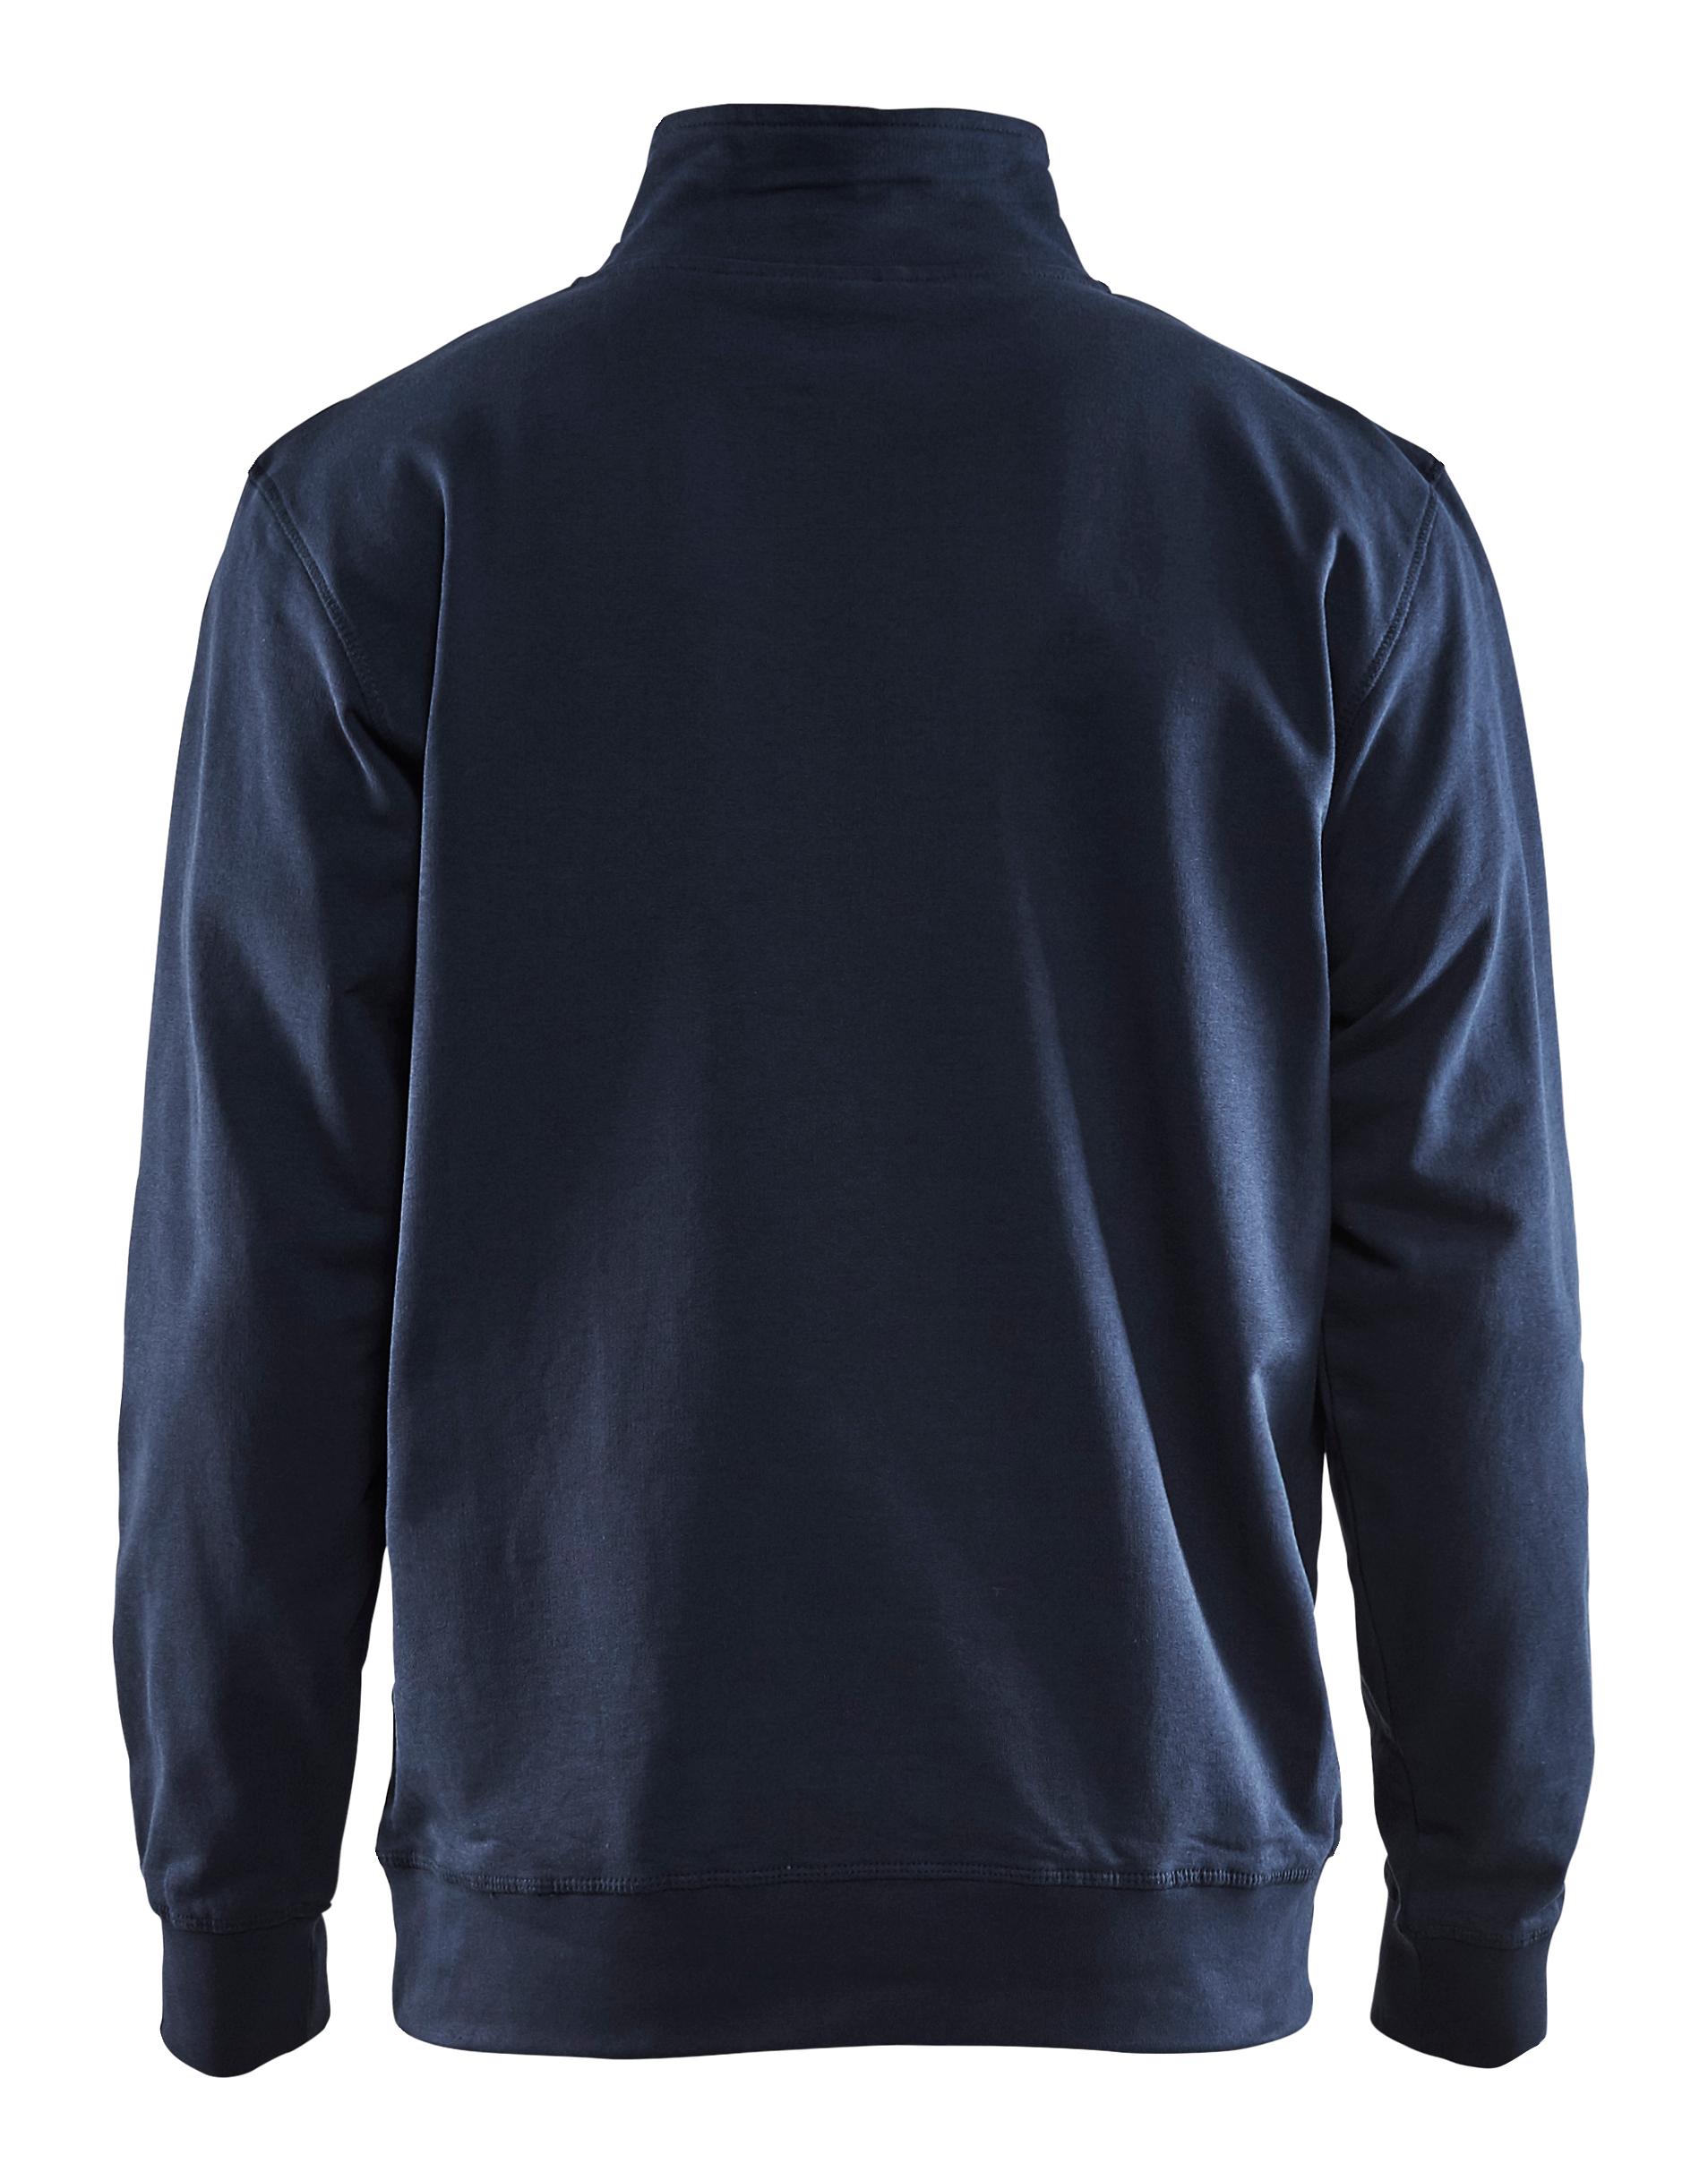 3353 1158 Blakläder Sweater mit 1/2 Reißverschluss 2-farbig, in 12 Farbkombinationen erhältlich, Kollektion INDUSTRIE